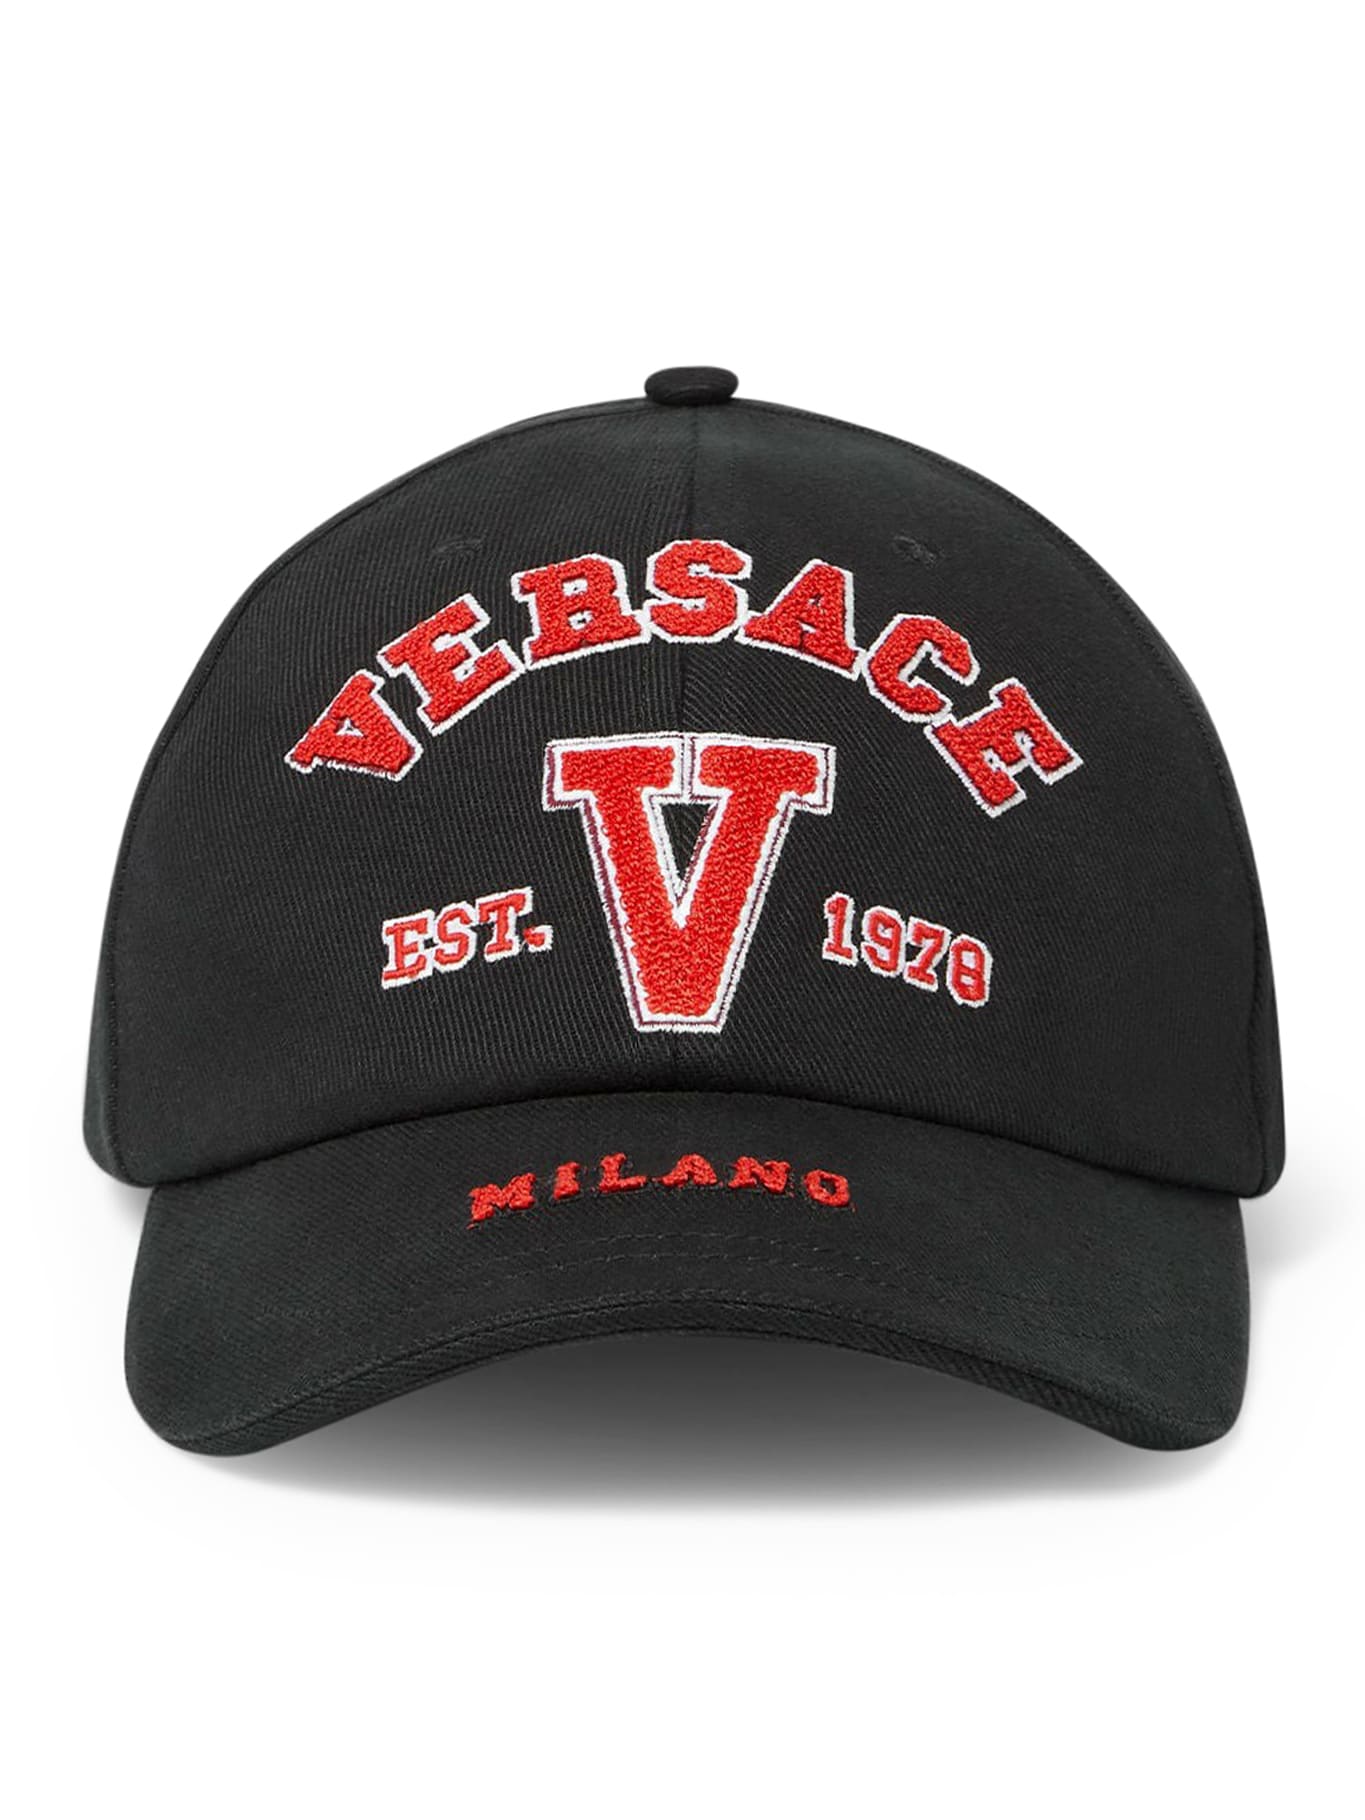 VERSACE BASEBALL CAP